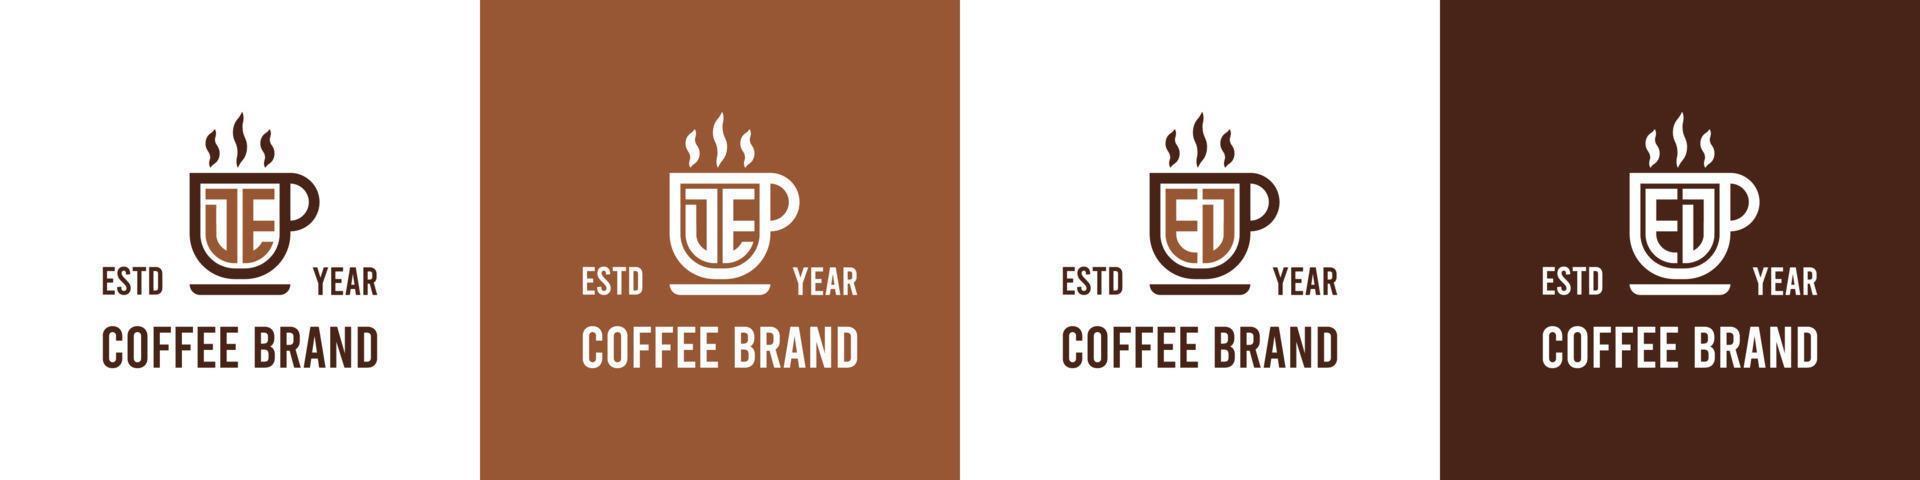 lettre de et ed café logo, adapté pour tout affaires en relation à café, thé, ou autre avec de ou ed initiales. vecteur